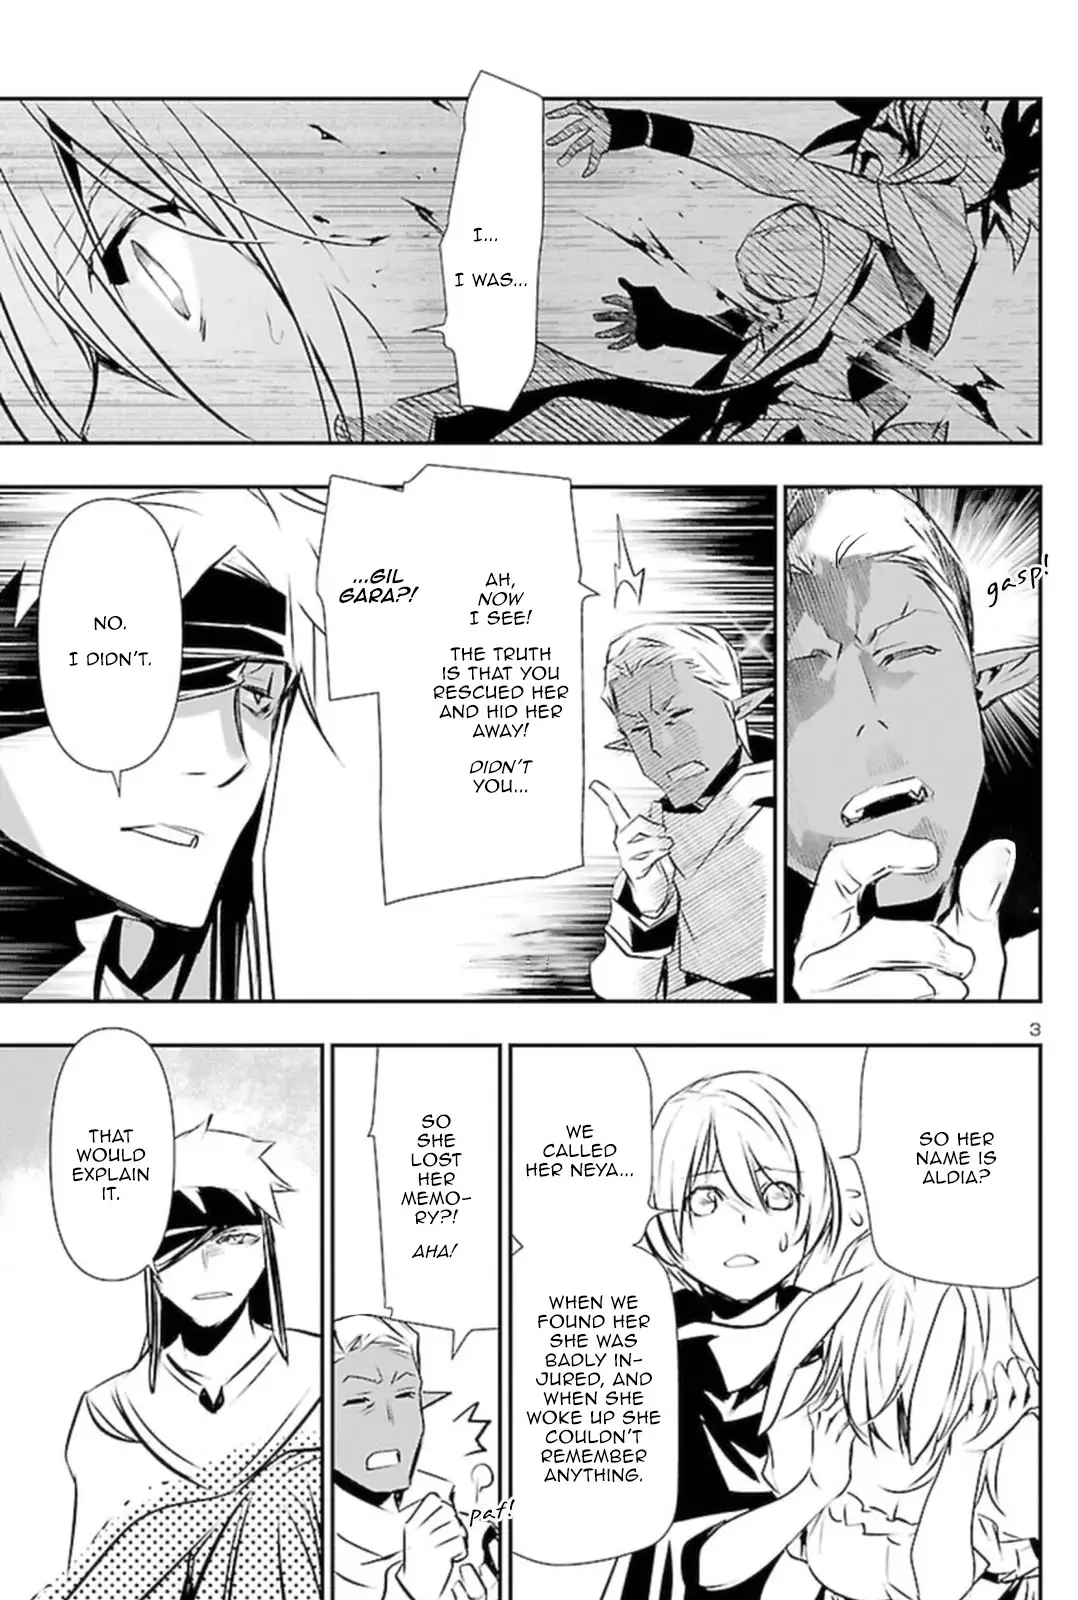 Shinju no Nectar - 61 page 2-8e4e8633